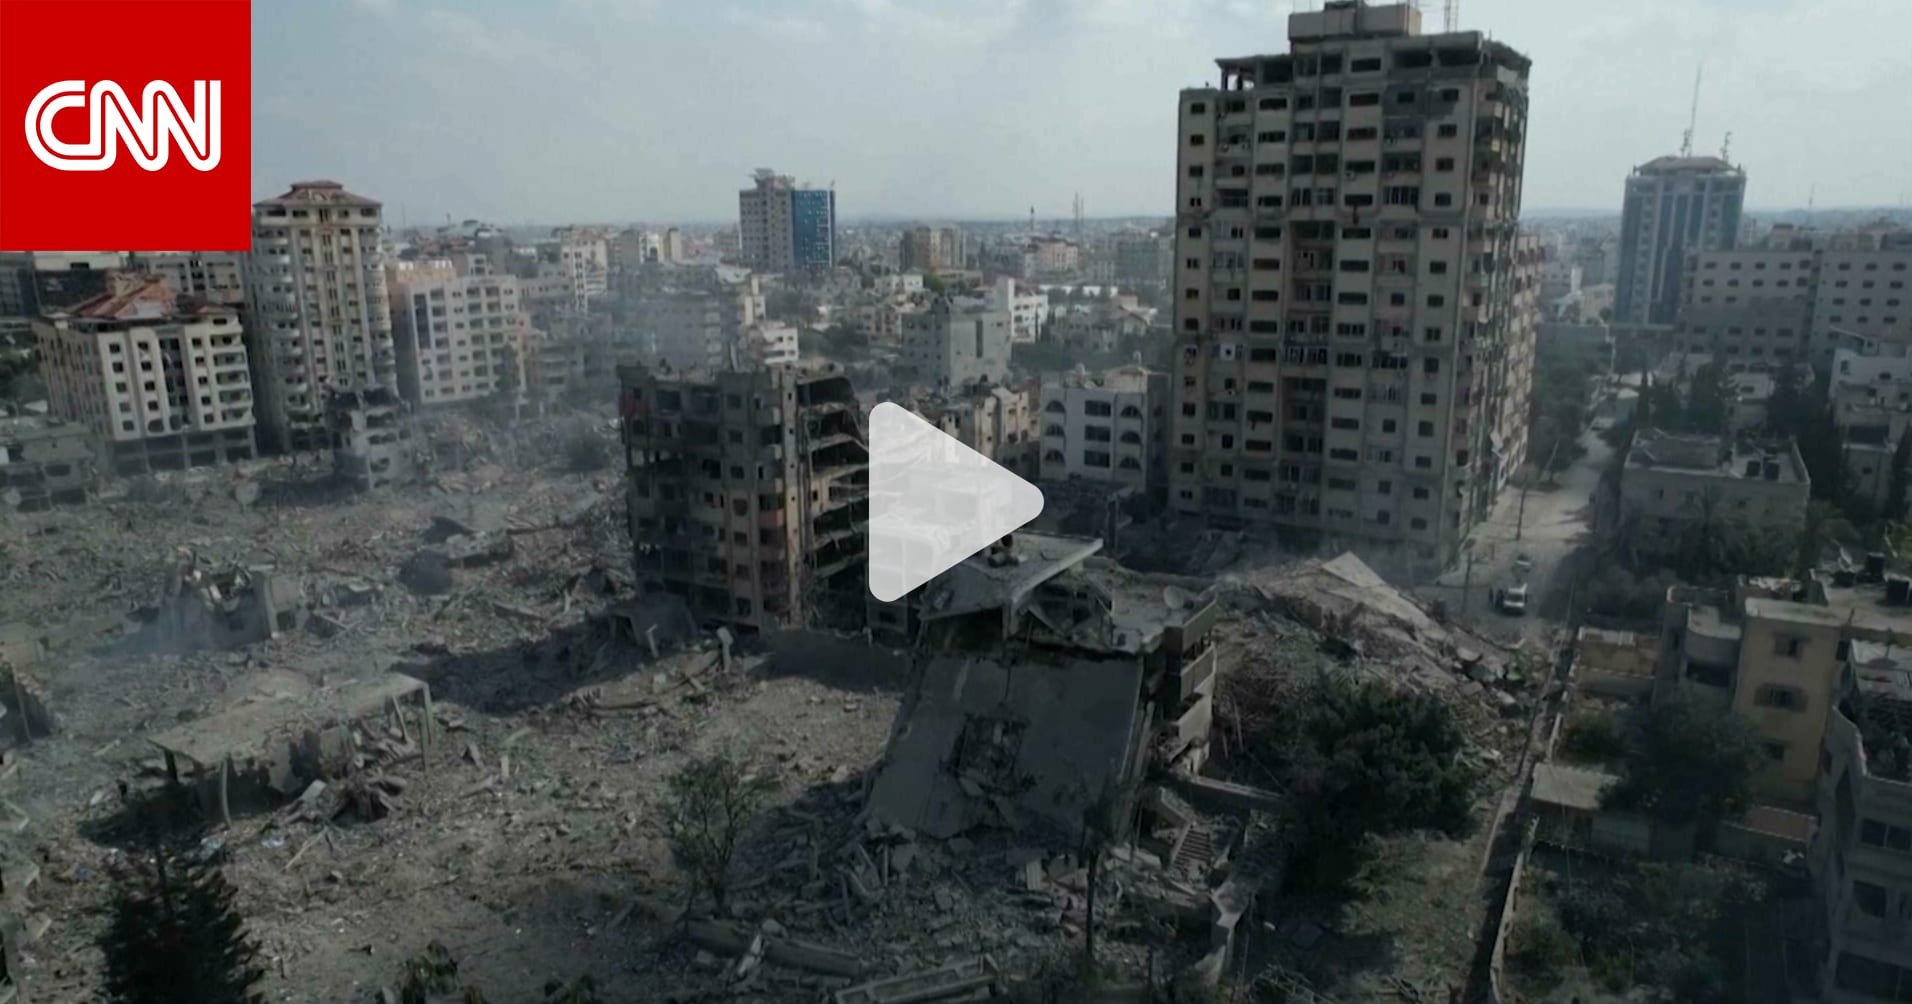 إسرائيل تطلق العنان لرد مدمر في غزة.. وتحشد قواتها لغزو بري محتمل